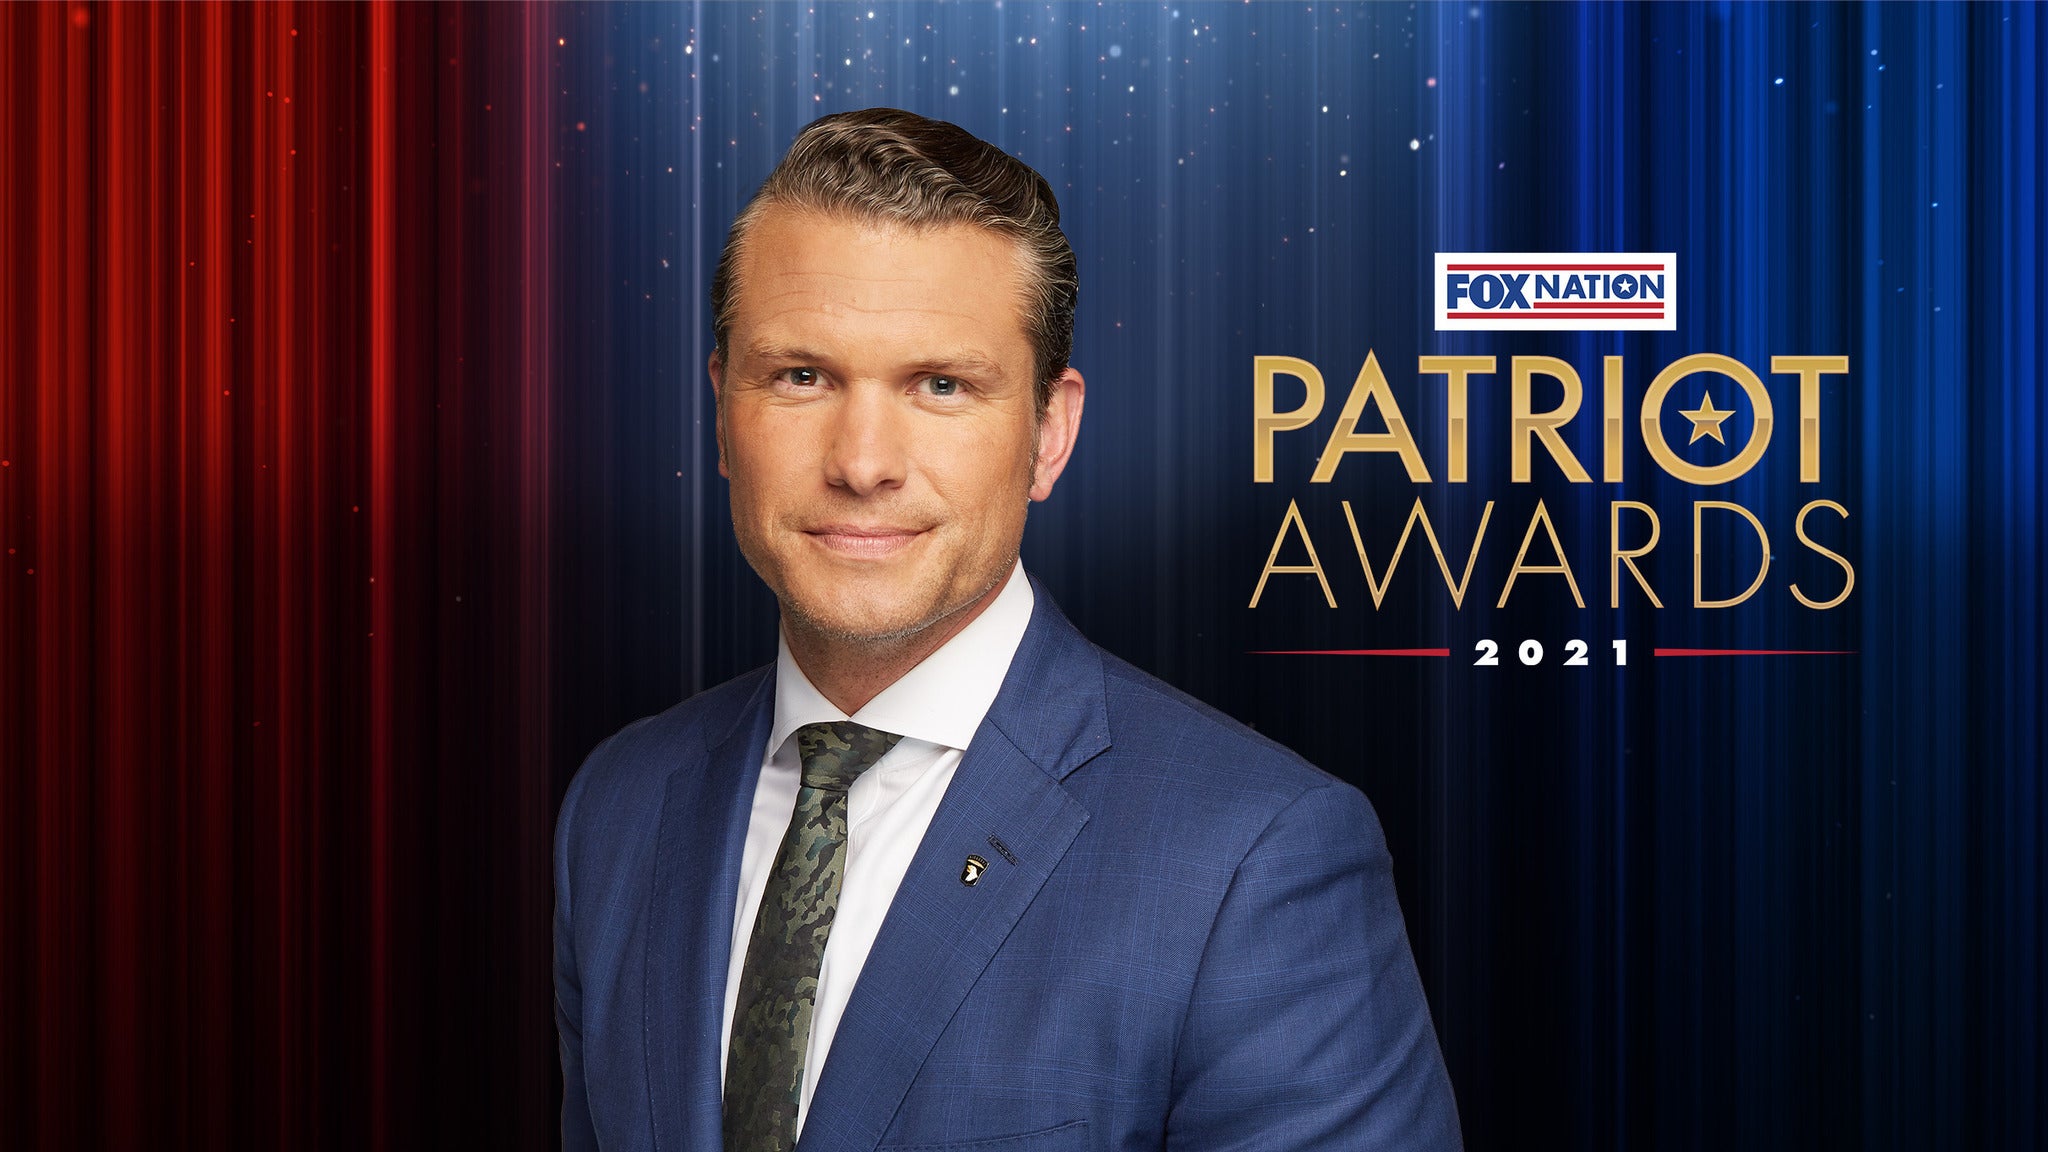 Fox Nation Patriot Awards Billets Dates d'événements et Calendrier